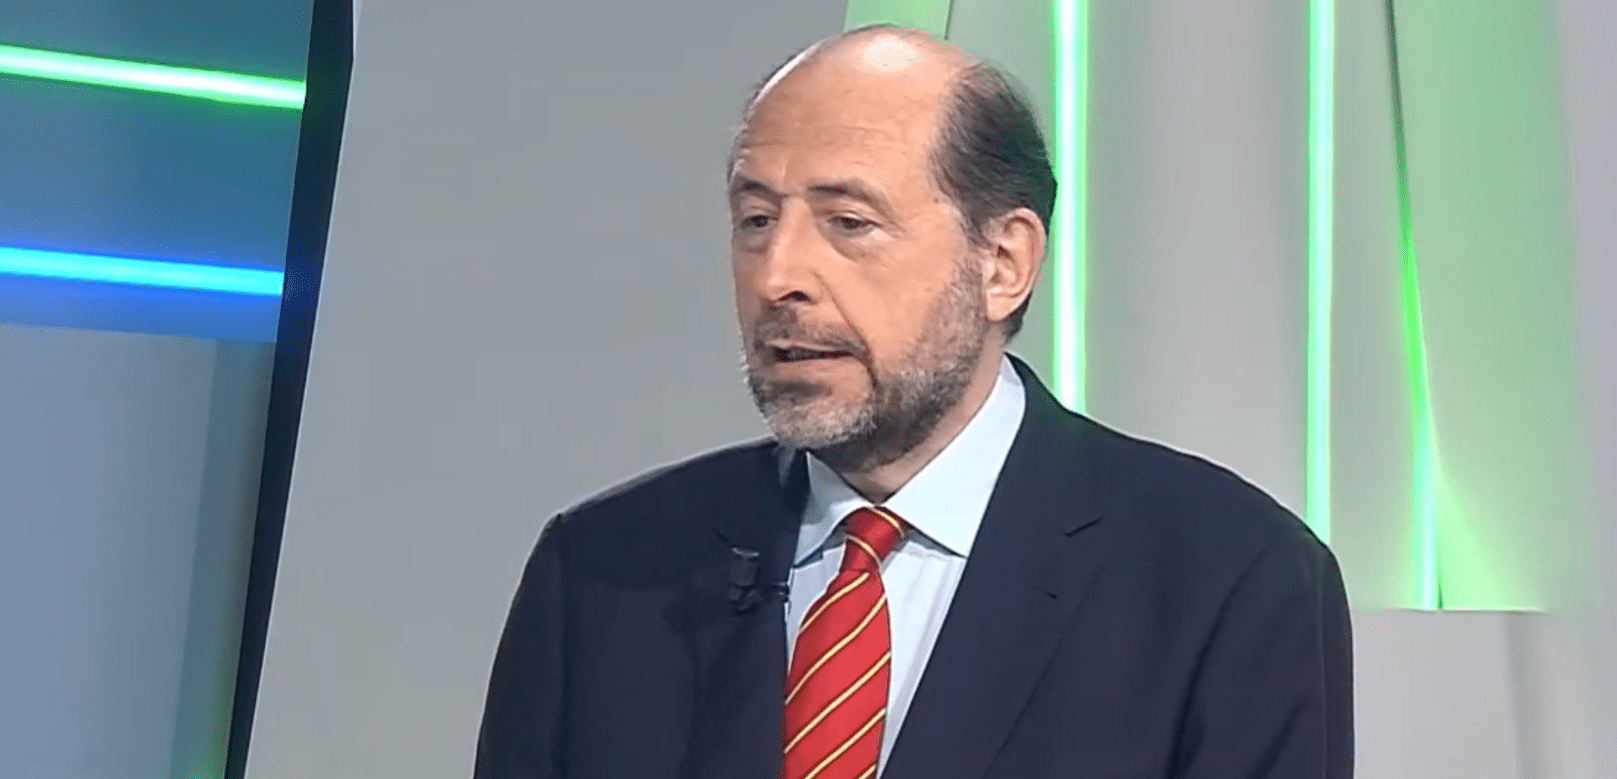  Miguel Ángel Cicuéndez: “Cuando no está abierto EE. UU. la bolsa europea va a su aire”